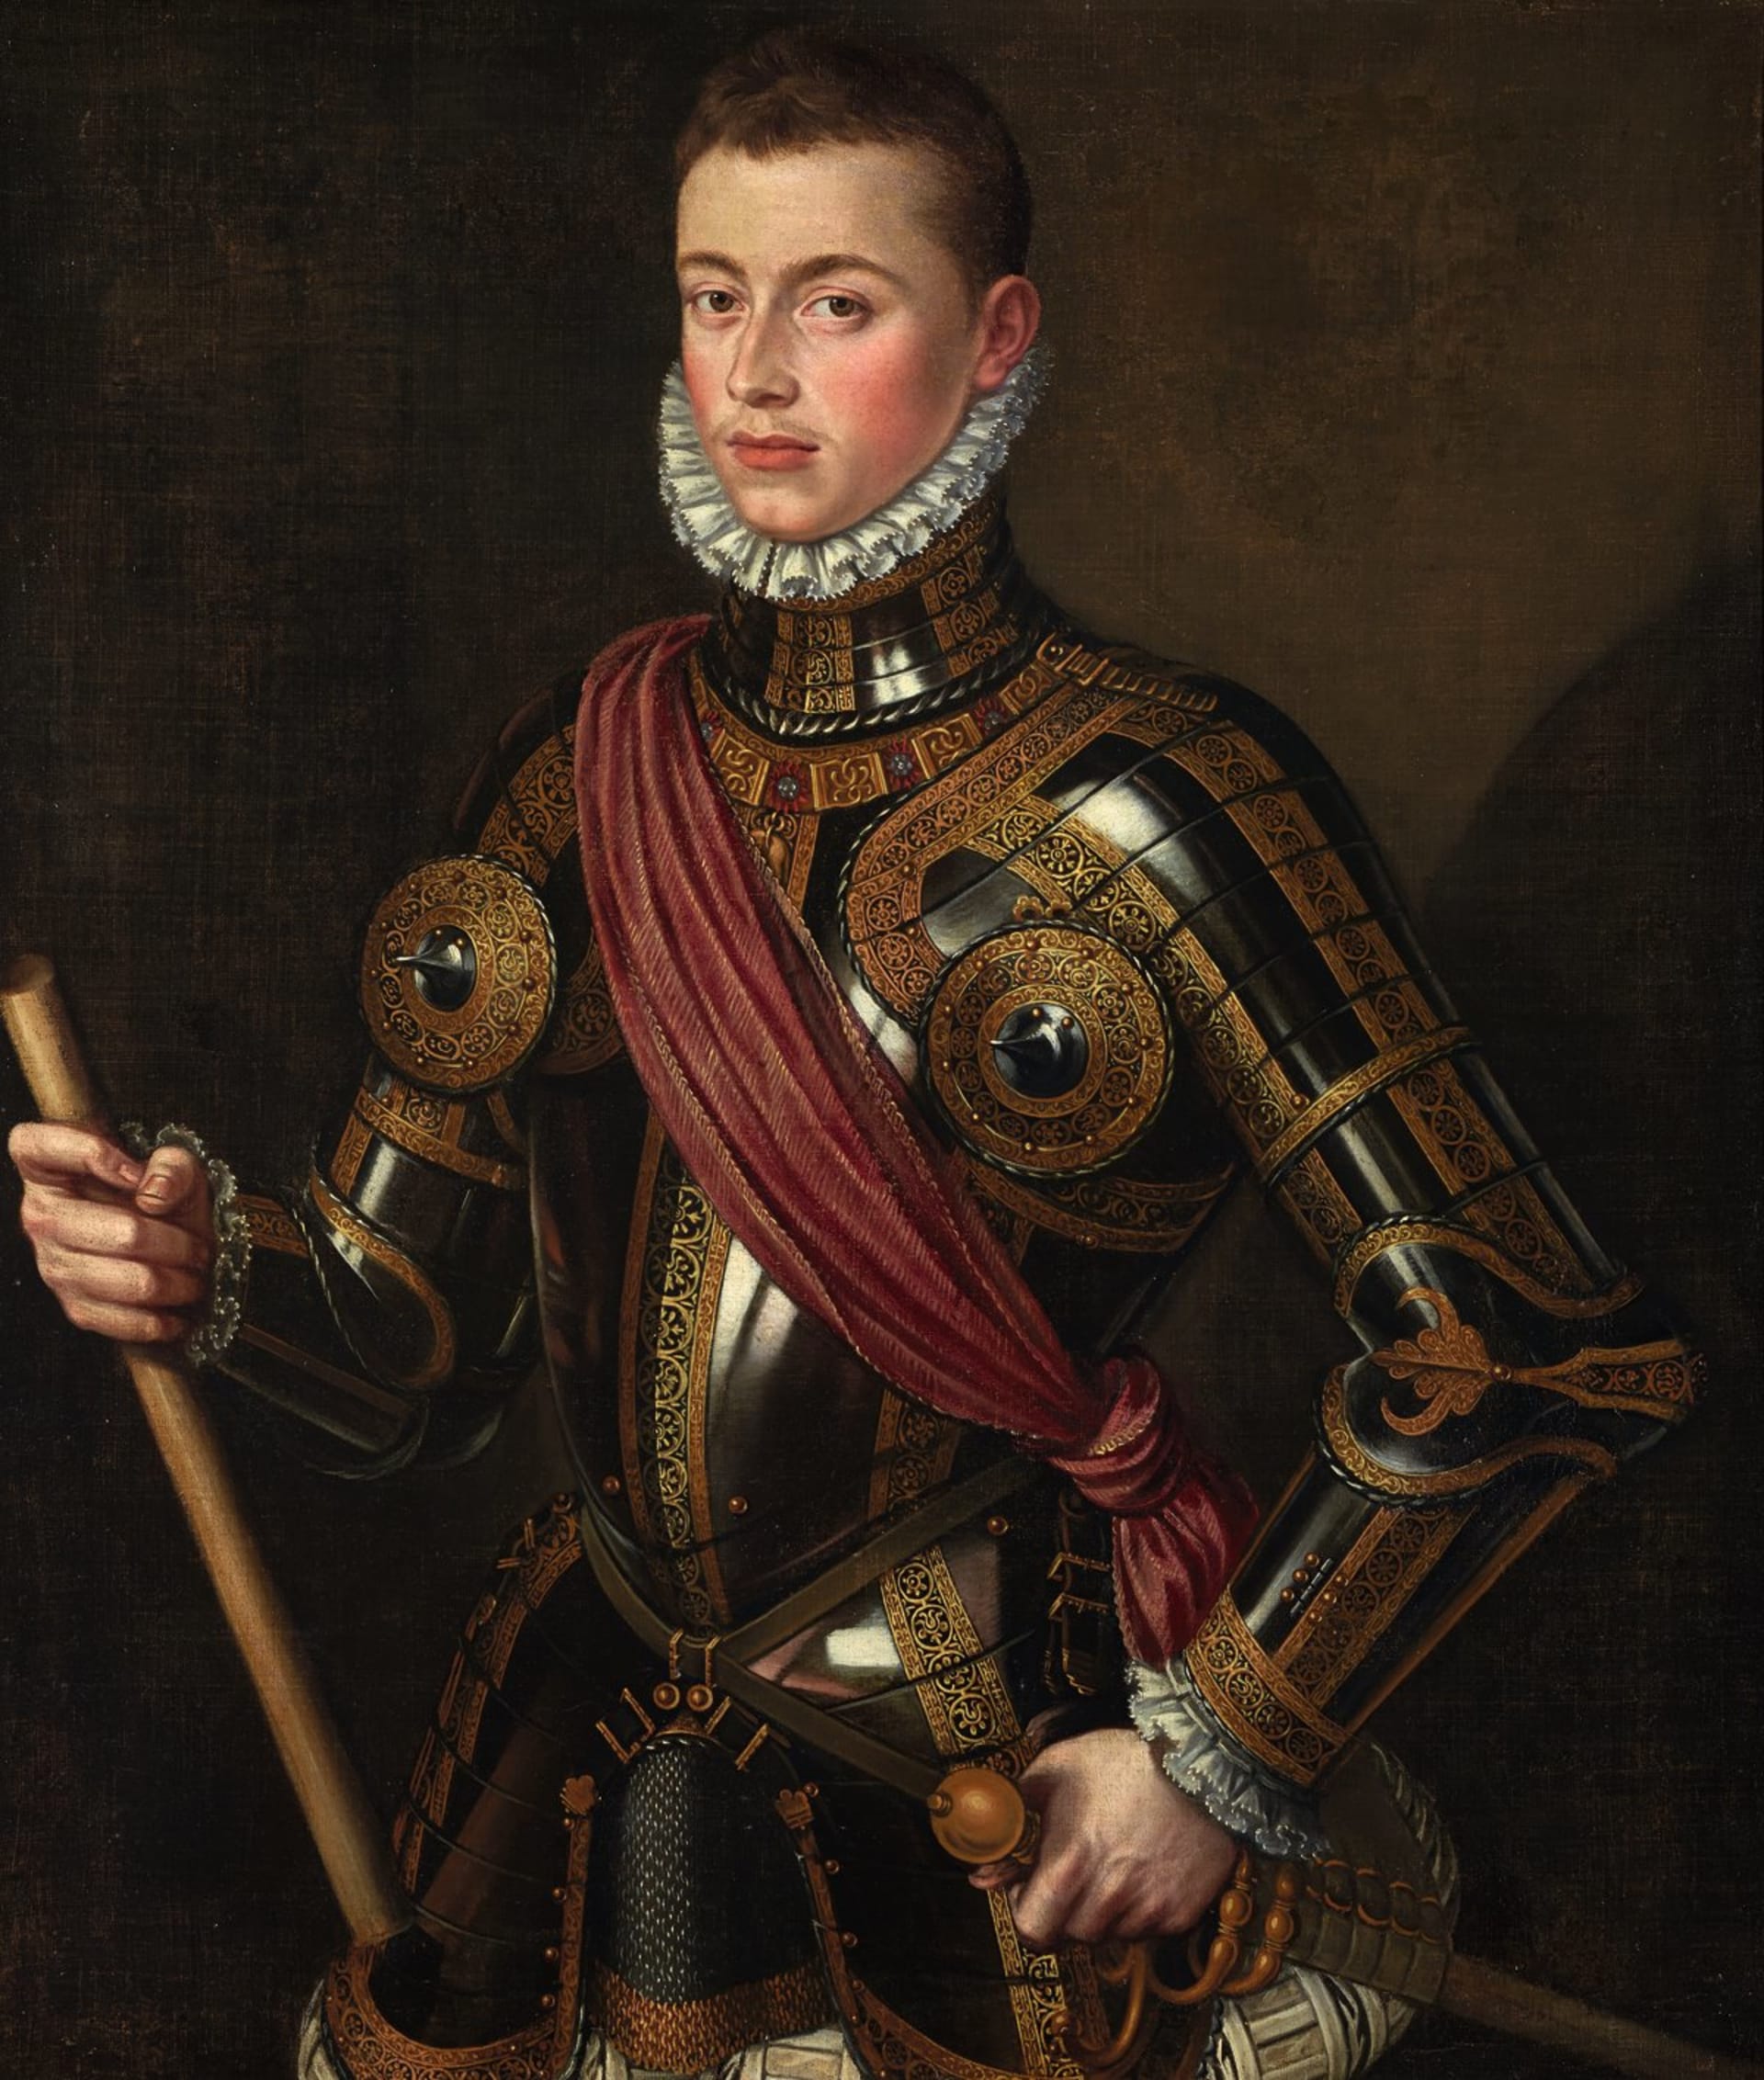 Přestože v Rakousku nikdy nežil, je Juan de Austria považován za největšího rakouského námořního velitele